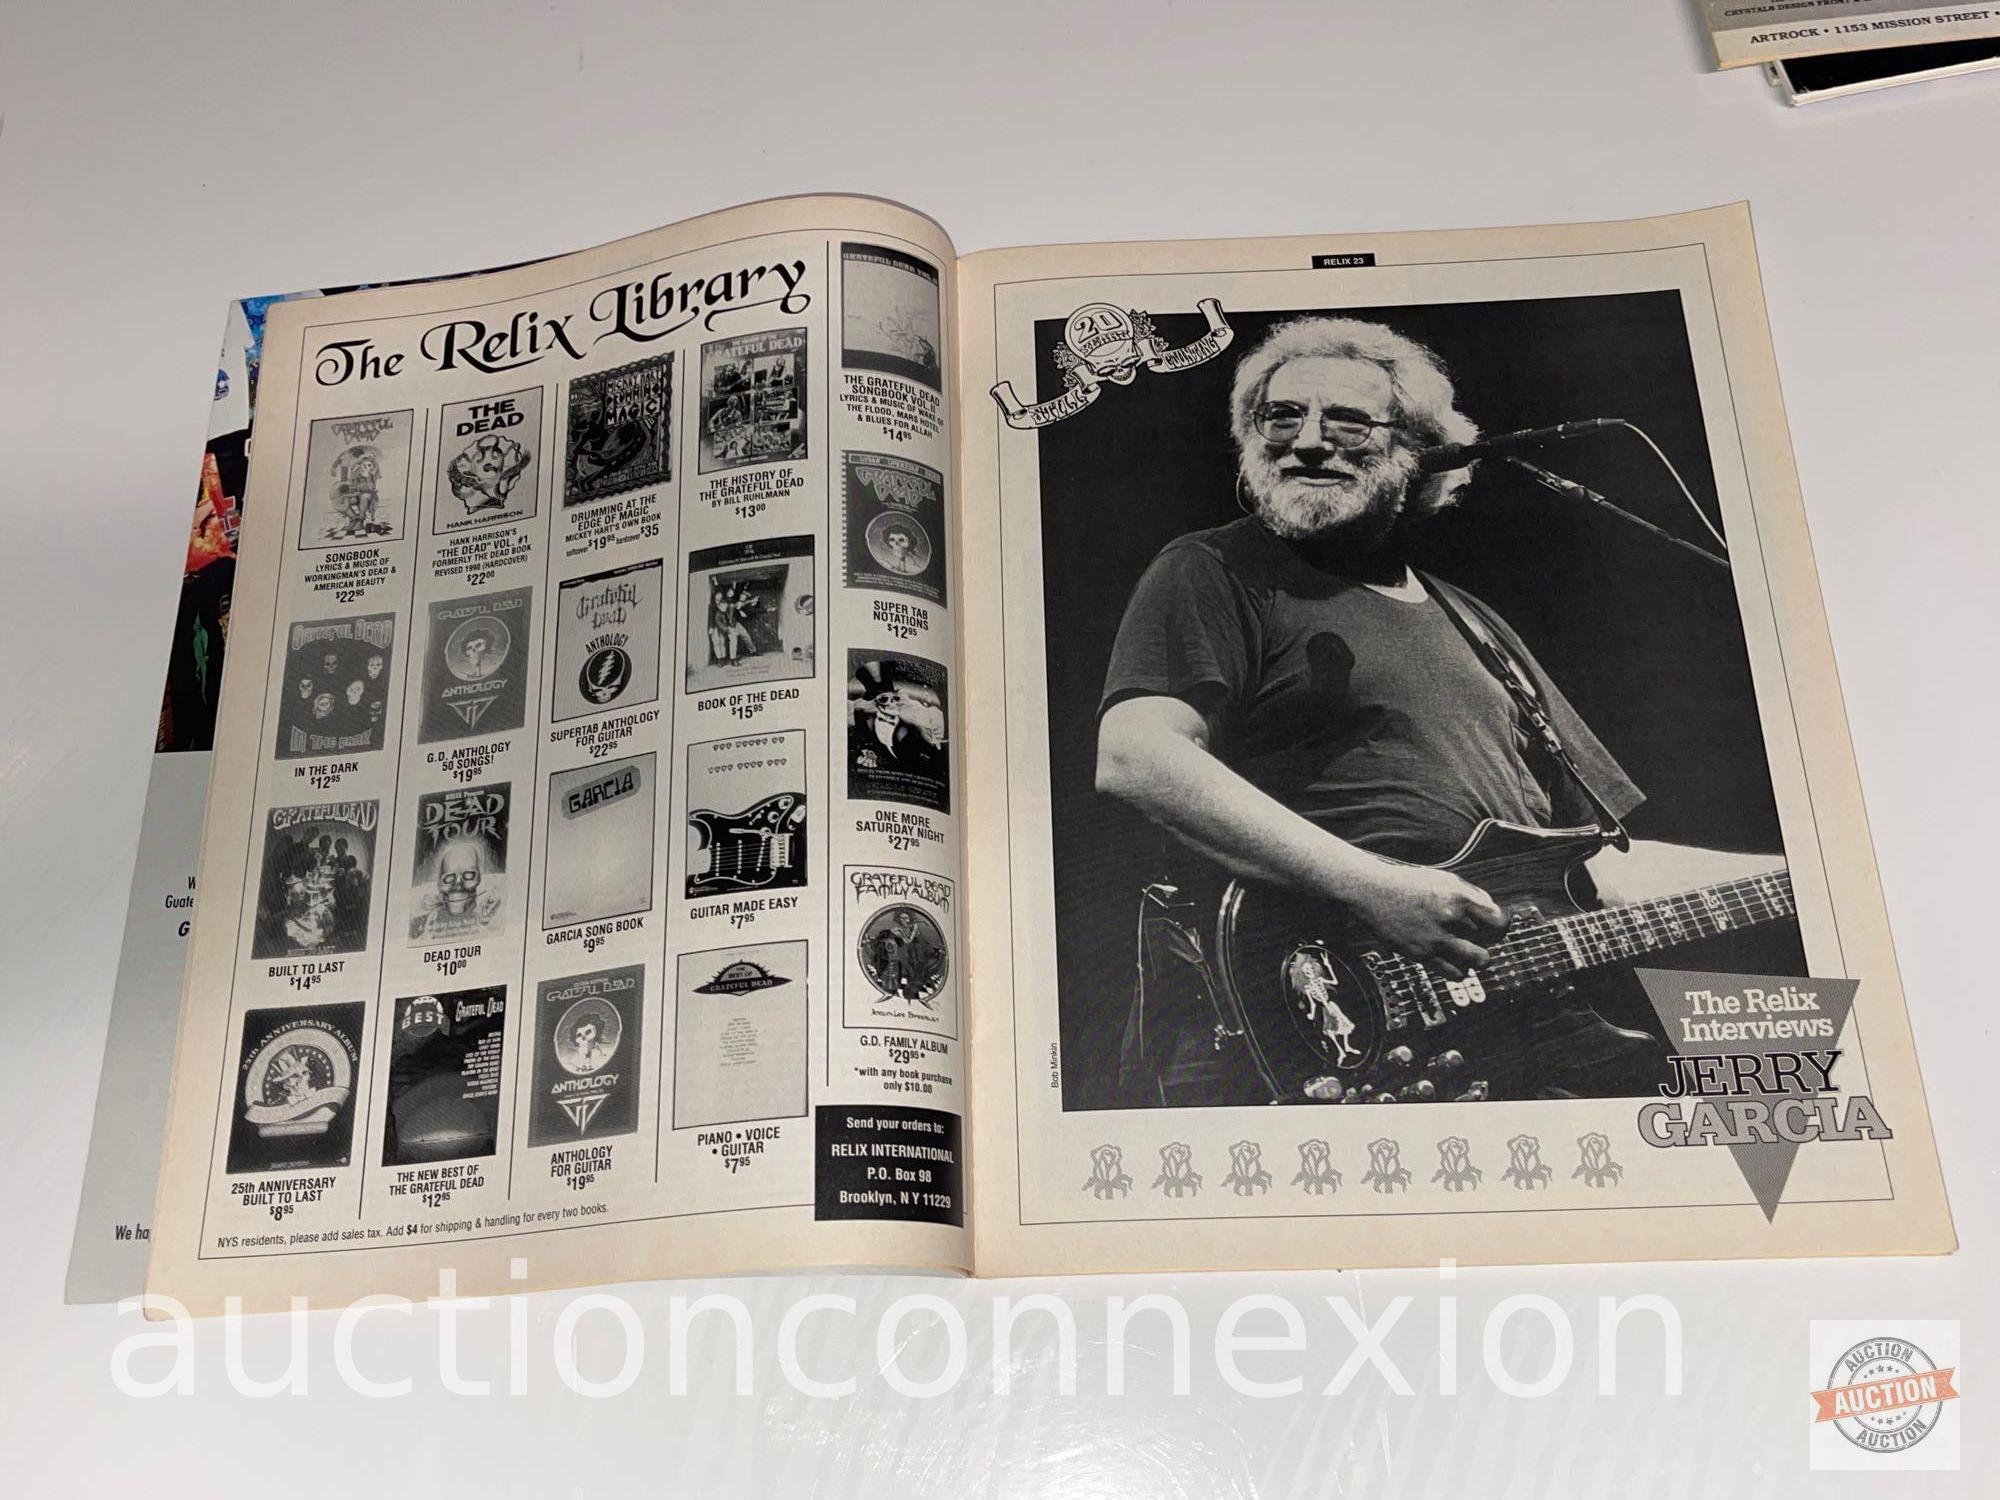 Ephemera - 4 Relix Magazines, Vol. 17#3, Vol. 17#6, Vol. 18#5 Grateful Dead & Vol. 20#2 Jerry Garcia